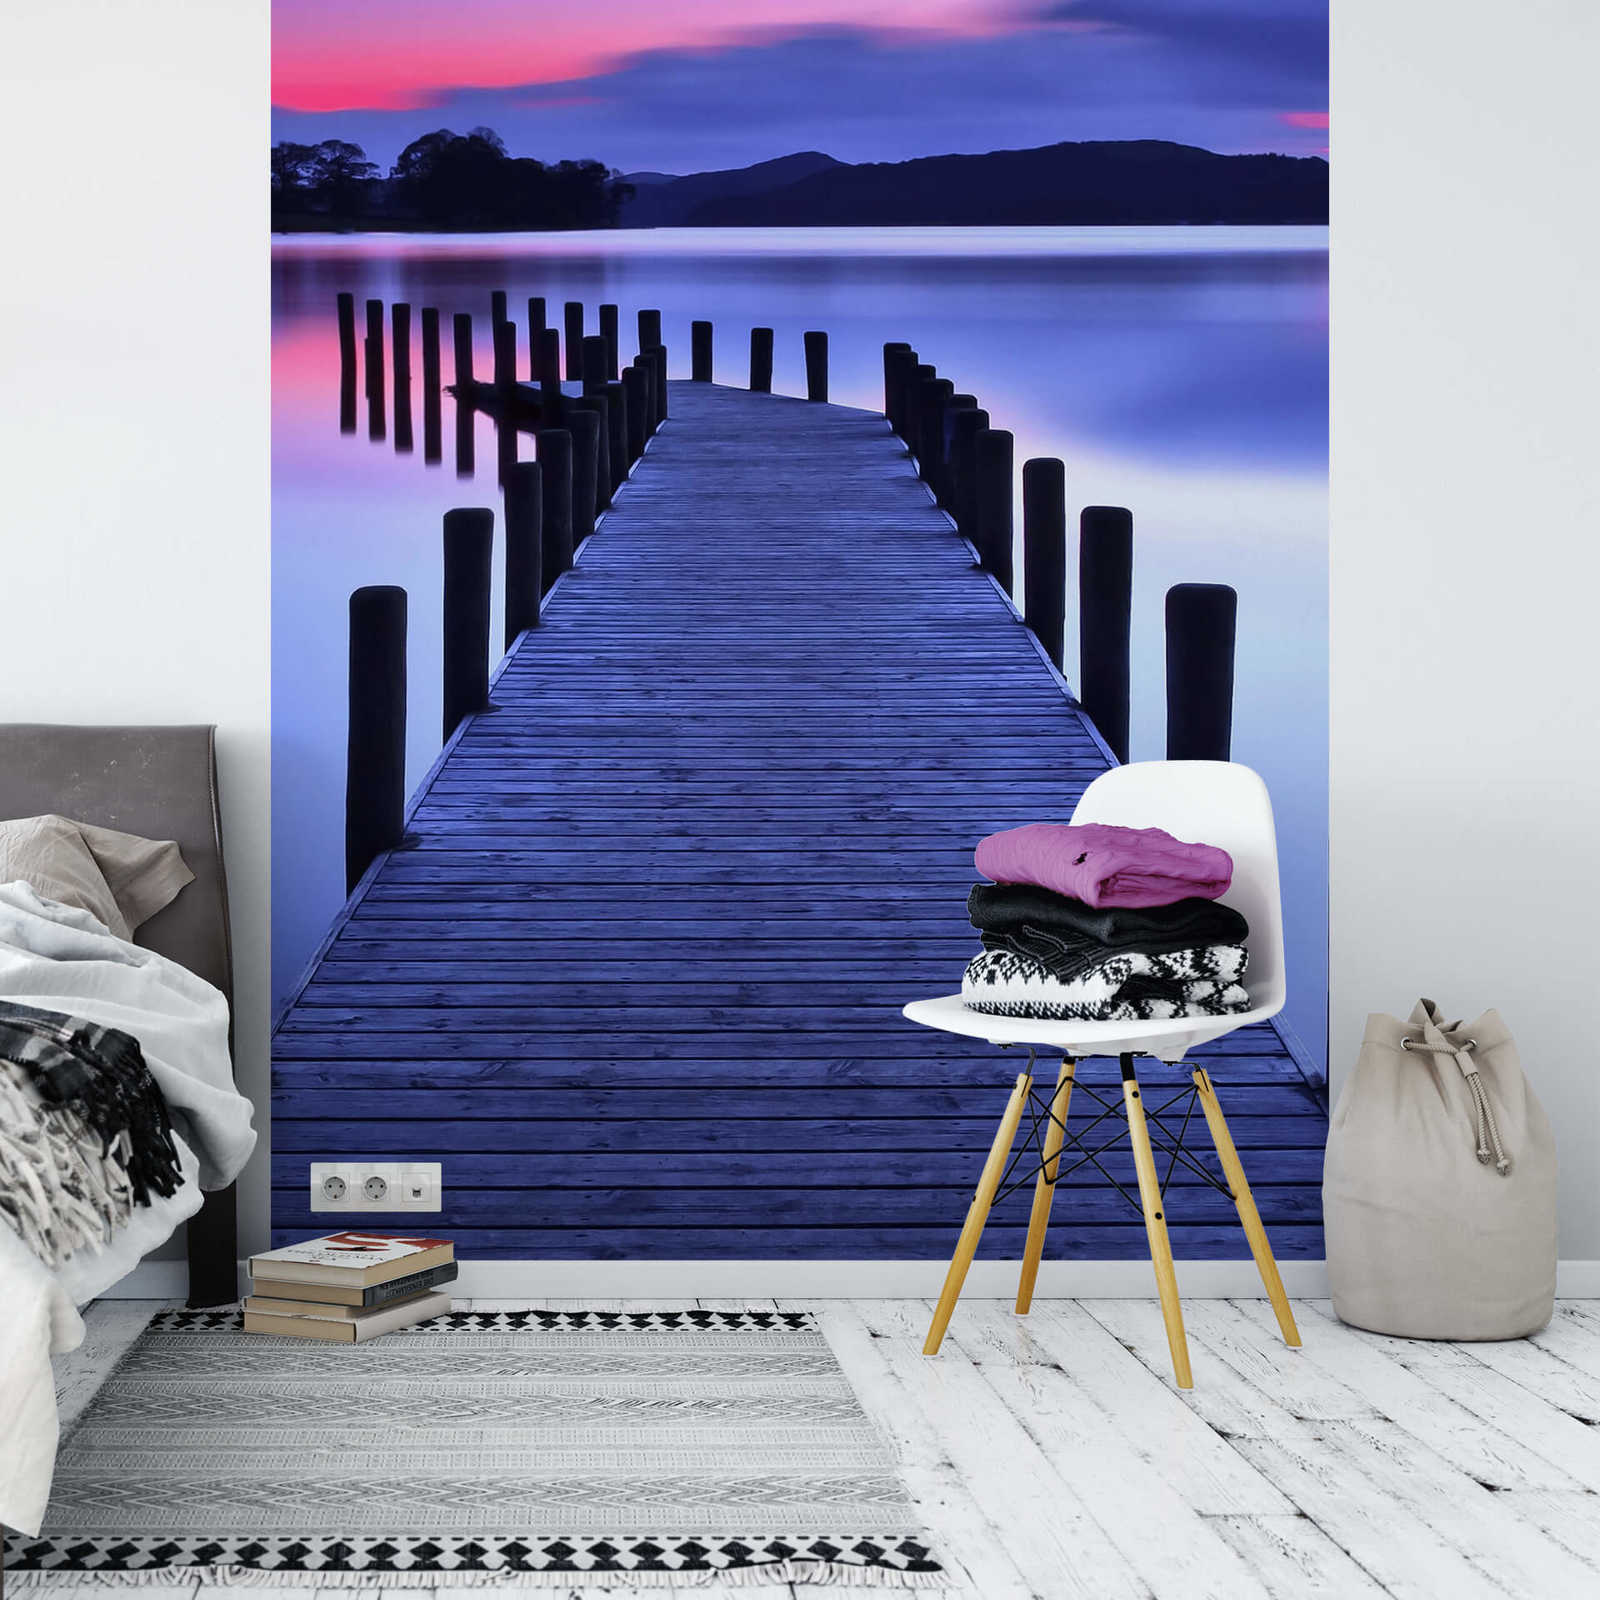             smal fotobehang met brug aan het meer - paars, roze
        